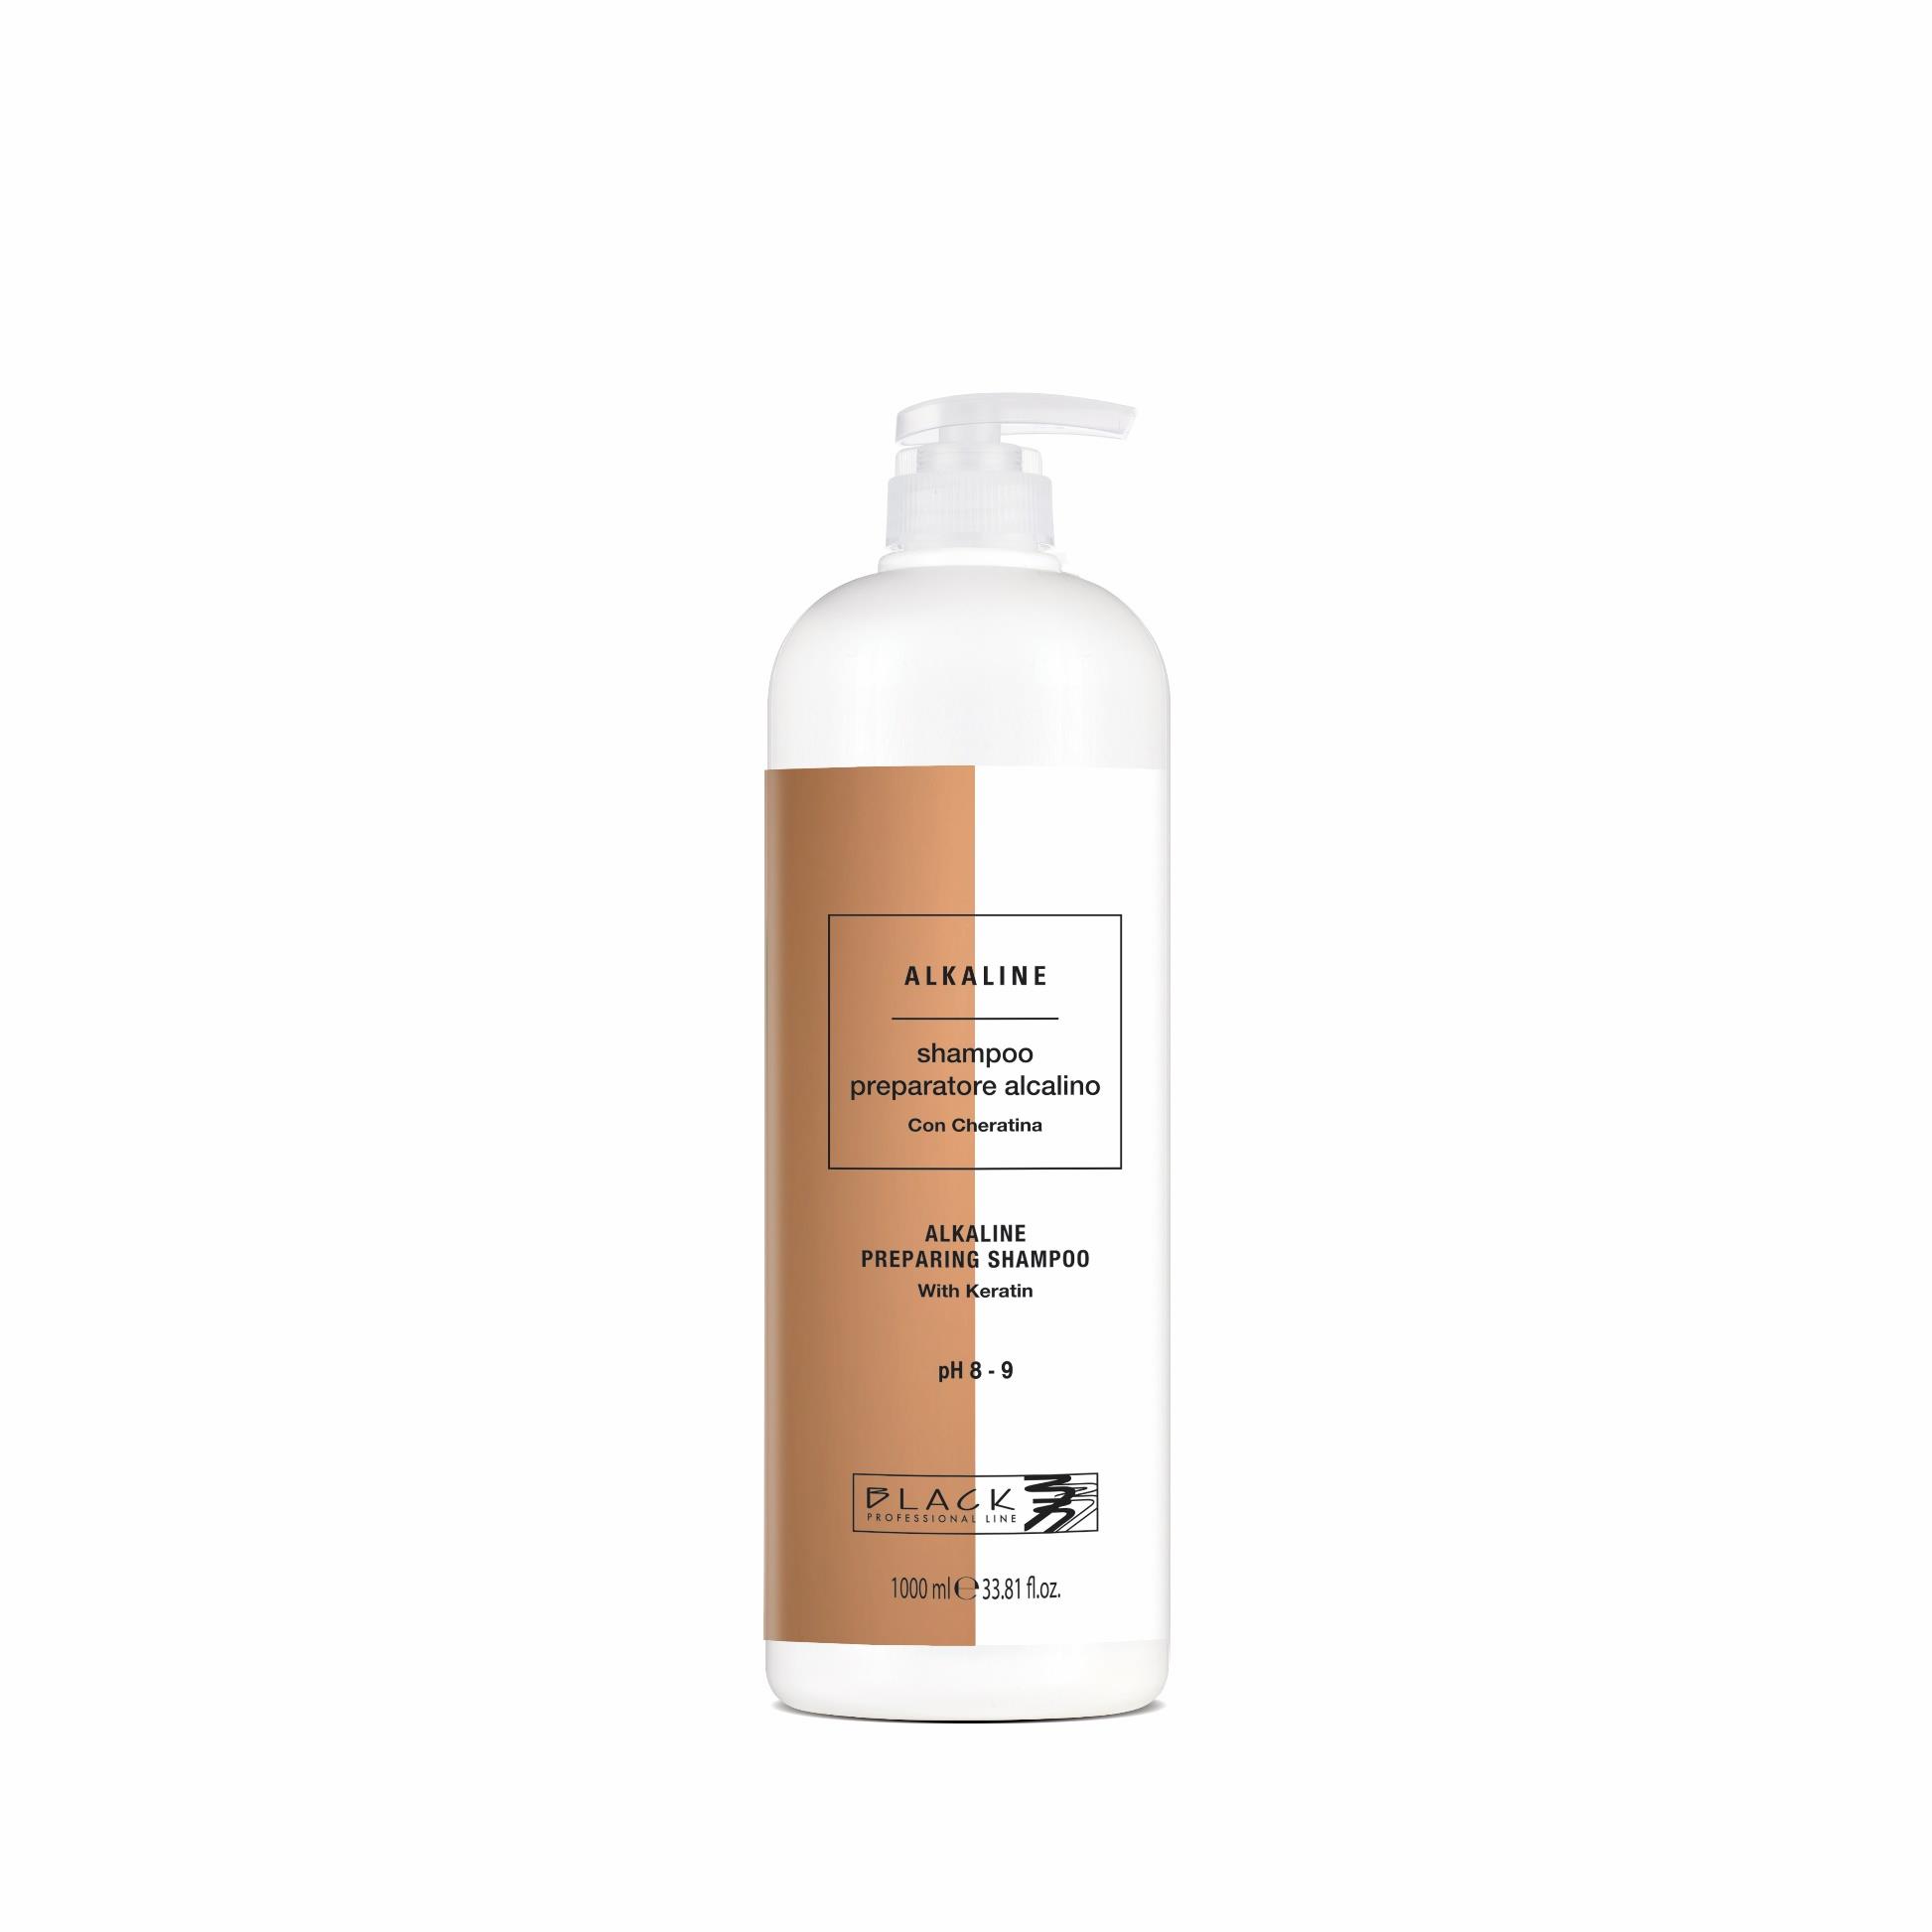 Black Alkaline Preparing Shampoo With Keratin - profesionálny čistiaci šampón s keratínom a pH 8-9, 1000 ml